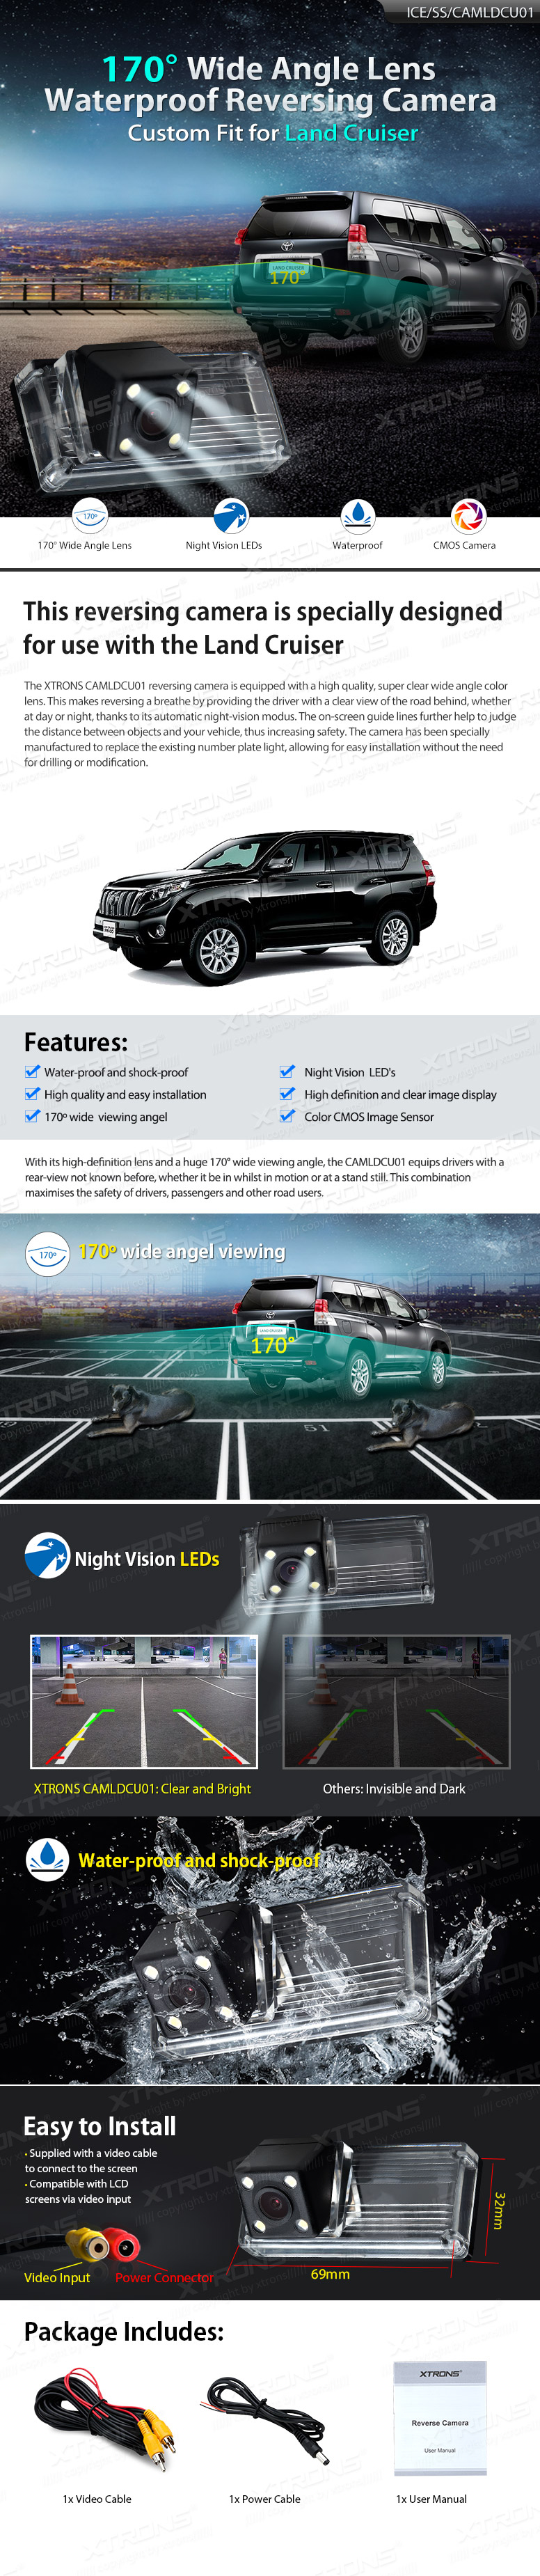 Toyota Landcruiser 150, RCA liitmikuga Xtrons tagurdus / parkimiskaamera multimeedia naviraadiole